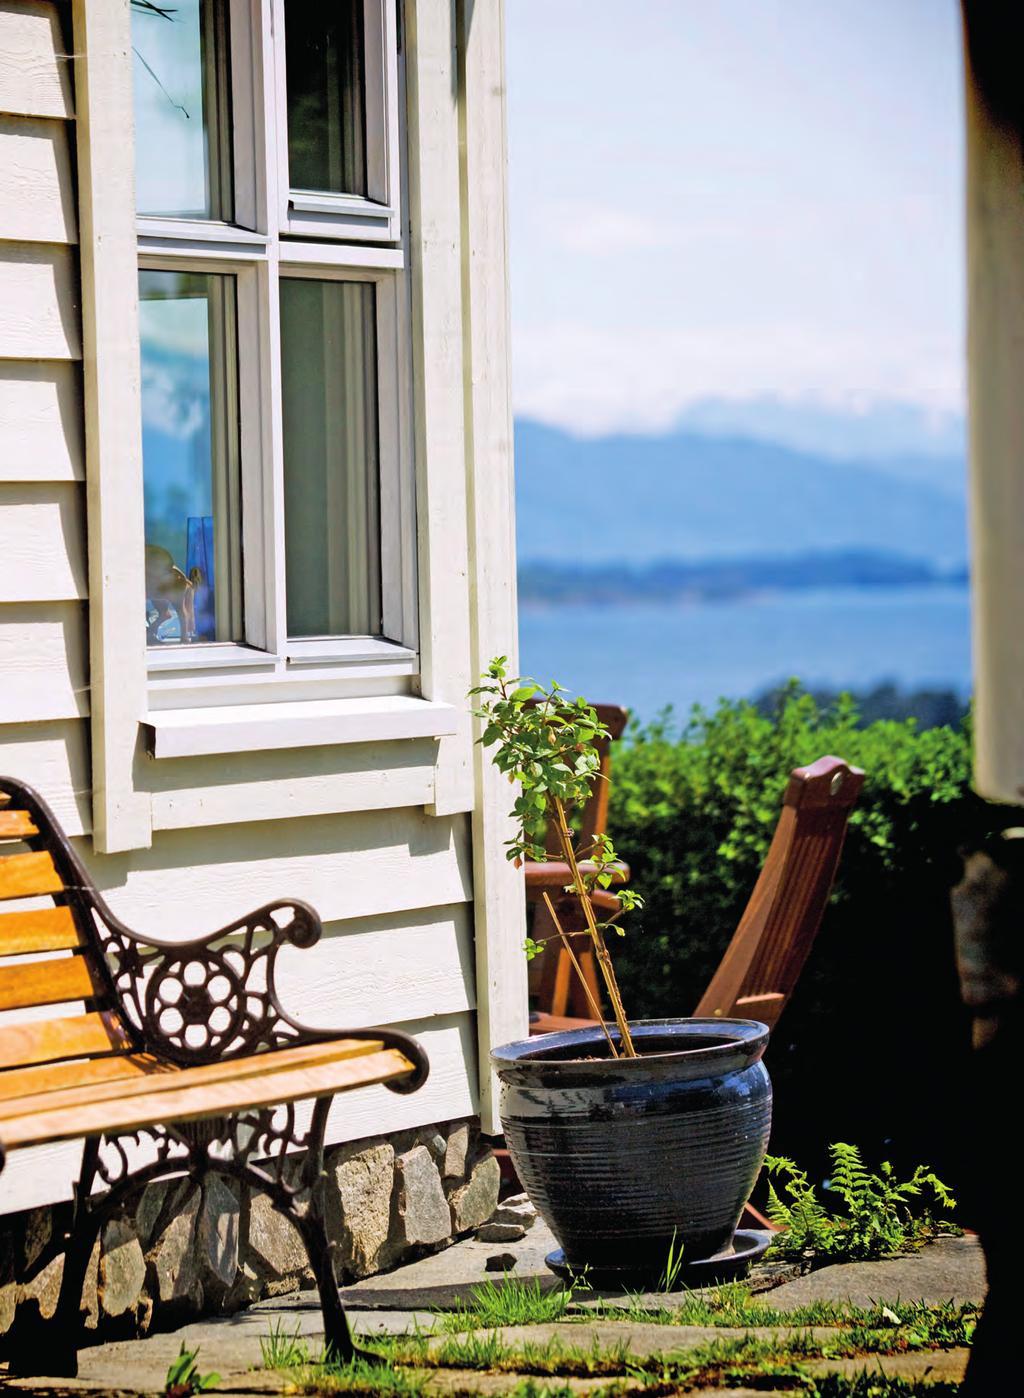 Lyssand en av Norges mest erfarne vindus- og dørprodusenter Lyssand var opprinnelig en produsent av håndlagde vindu og tremøbler.